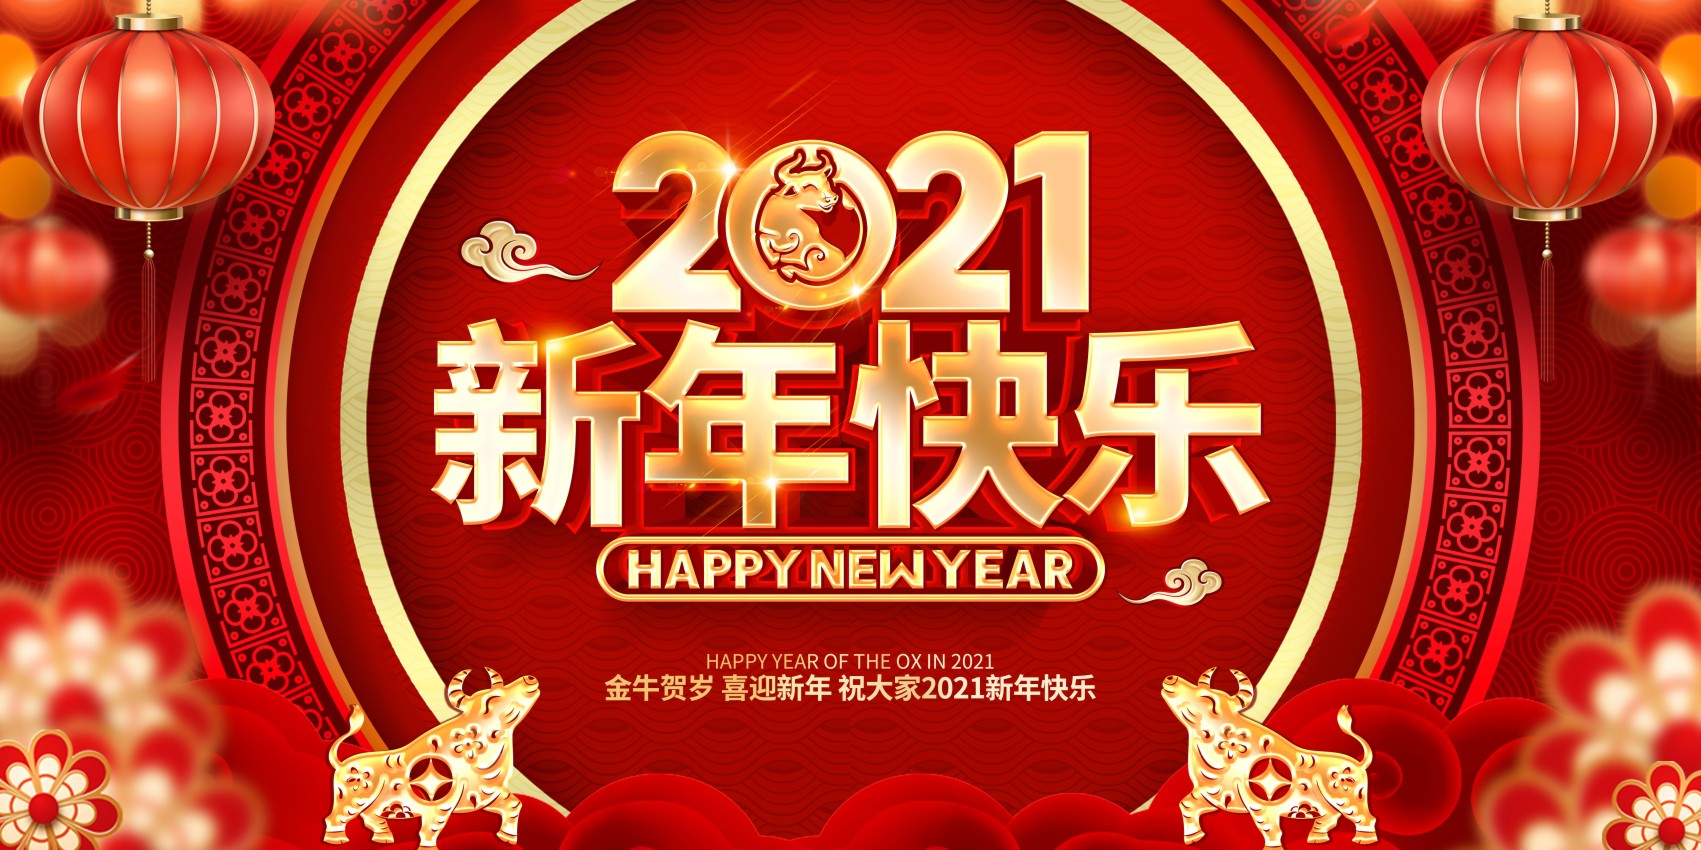 770新年快乐春节日2021牛年喜庆舞台背景261海报印制展板写真喷绘